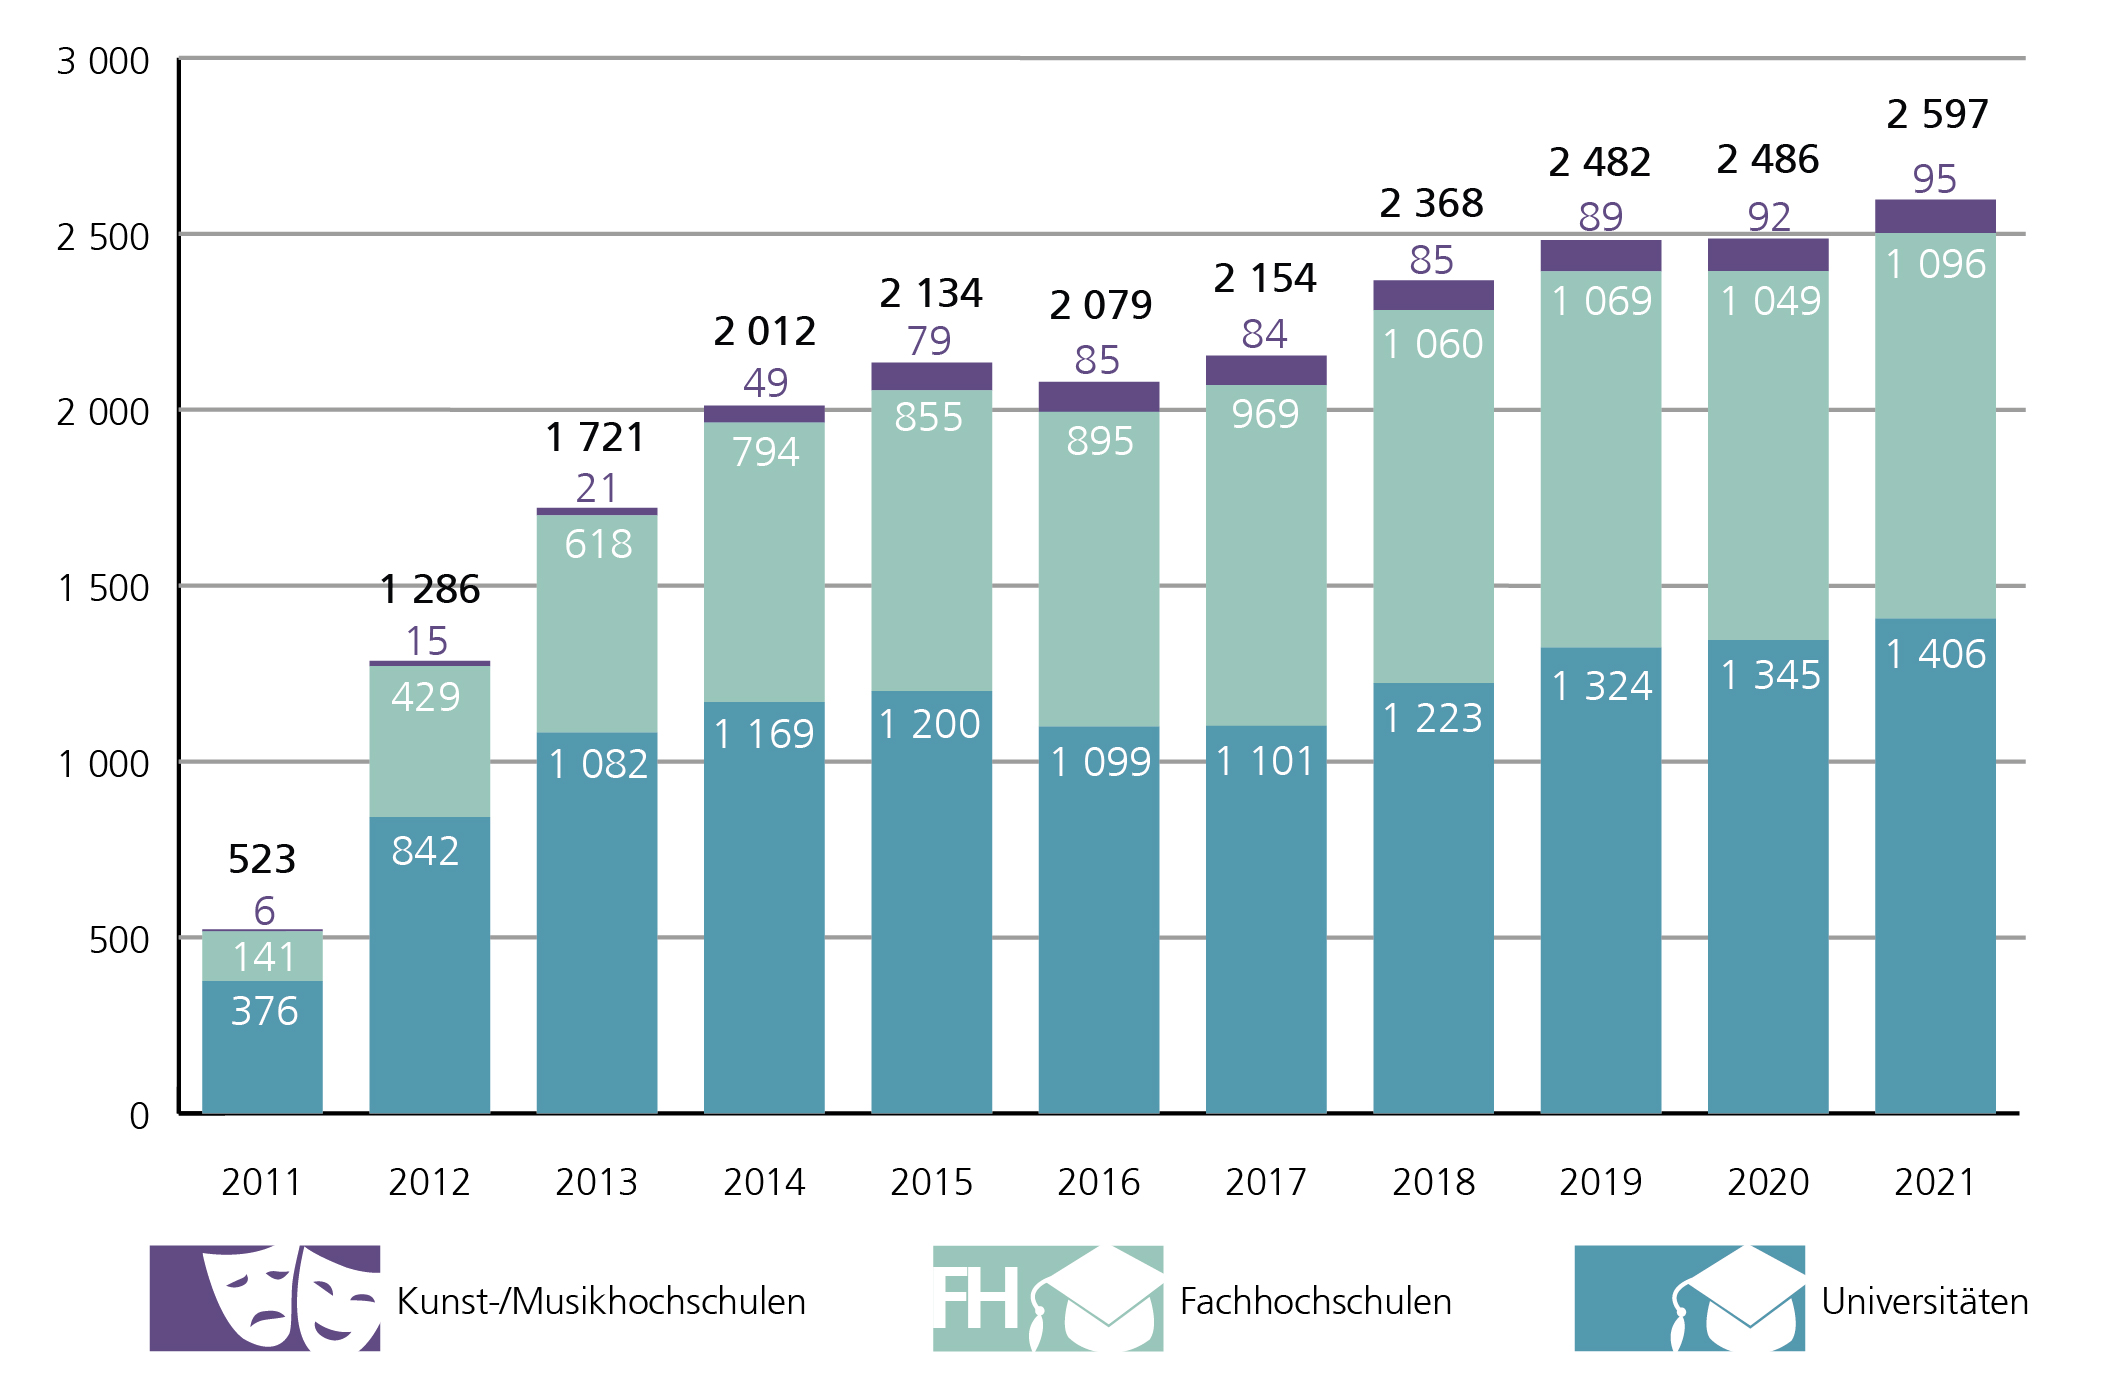 A1: Die Zahl der Deutschlandstipendiatinnen und -stipendiaten in Niedersachsen ist von 523 im Jahr 2011 auf 2.597 im Jahr 2021 angestiegen. Im Zeitverlauf zeigt sich eine nach Hochschulart unterschiedliche Entwicklung. So studierte in 2011 mit 376 Stipendiatinnen und Stipendiaten der Großteil (71,9 %) an einer Universität, 141 (27,0 %) an einer Fachhochschule und 6 (1,1 %) an einer Kunst- und Musikhochschule. Innerhalb von 10 Jahren nahm insbesondere der Anteil Geförderter an Fachhochschulen stetig zu. 2021 waren 1.406 Stipendiatinnen und Stipendiaten (54,1 %) an einer Universität und 1.096 (42,2 %) an einer Fachhochschule eingeschrieben, weitere 3,7 % entfielen auf Kunst- und Musikhochschulen.